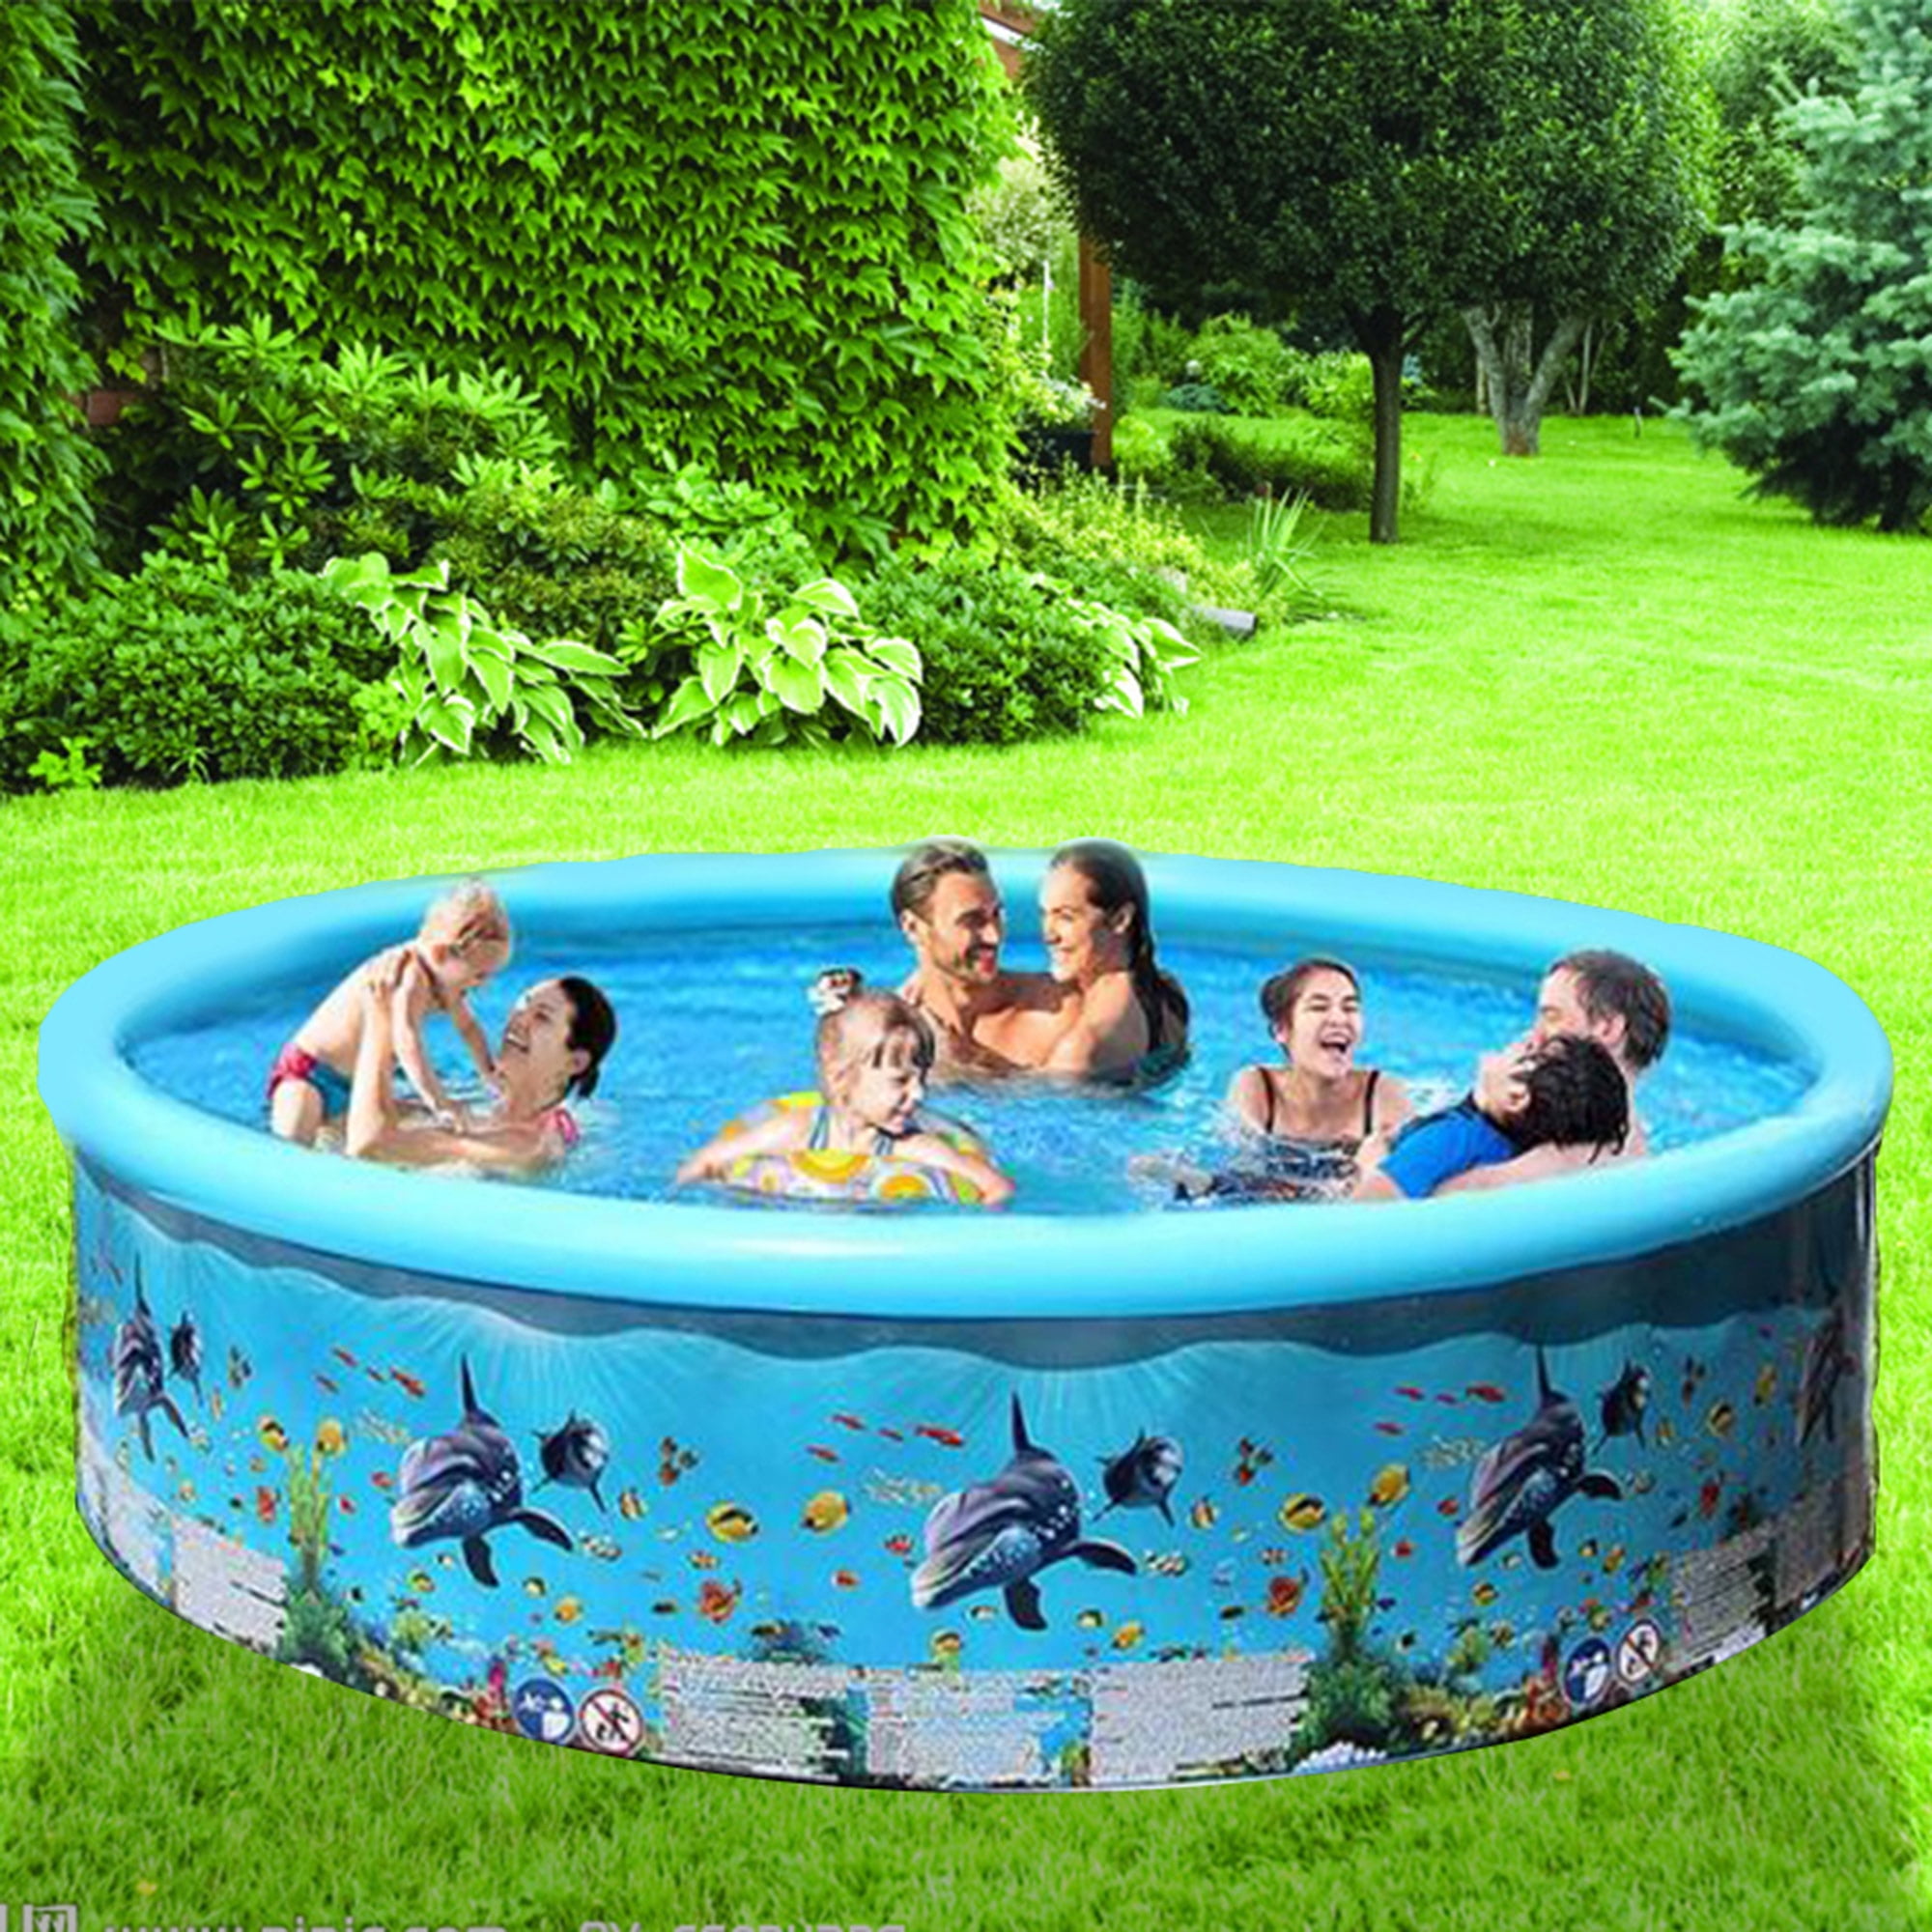 Baby Pool 90 cm x 25 cm Mermaid Inflatable Pool 2 Rings Paddling Pool Inflatable Children's Pool Children's Paddling Pool Swimming Pool Inflatable Paddling Pool Portable Bathtub